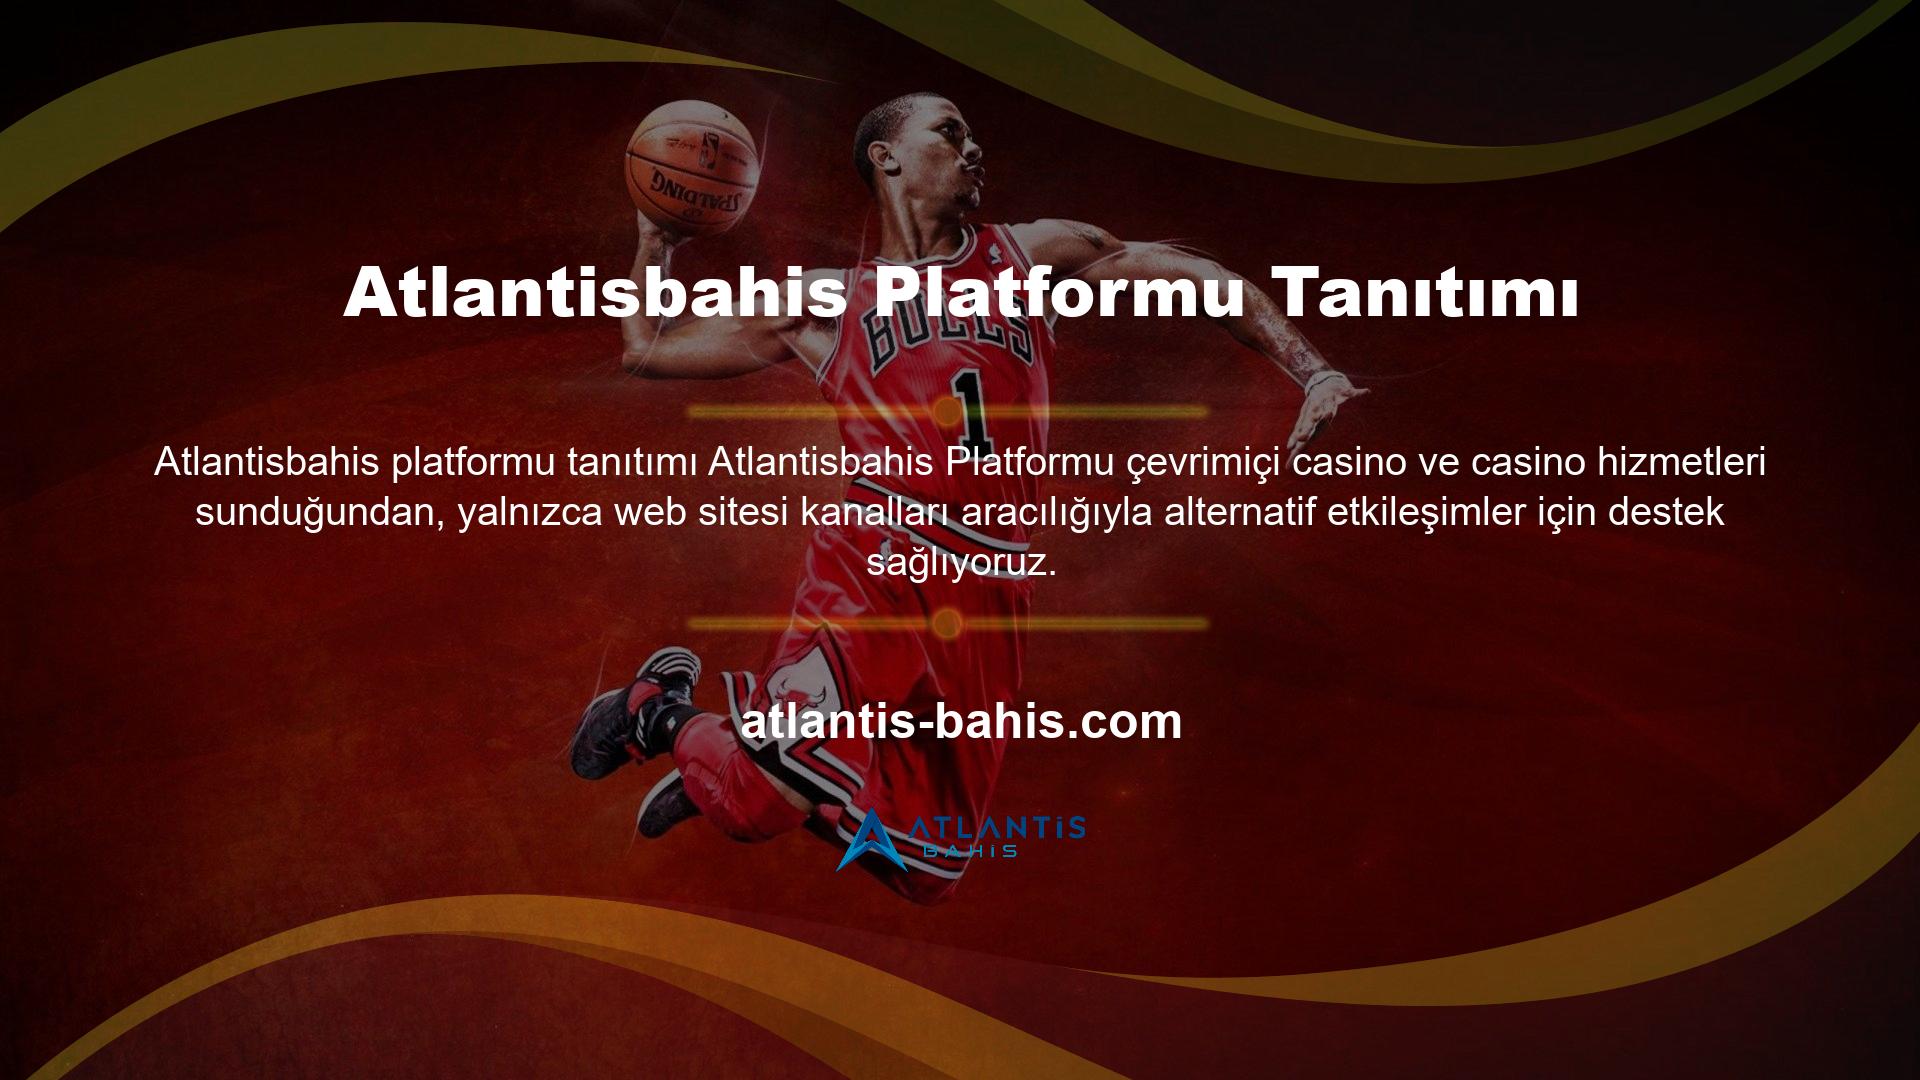 Atlantisbahis çevrimiçi destek sitesi kullanıcılarına ve siteye üye olmak isteyen kullanıcılara çevrimiçi destek hizmetleri verilmektedir